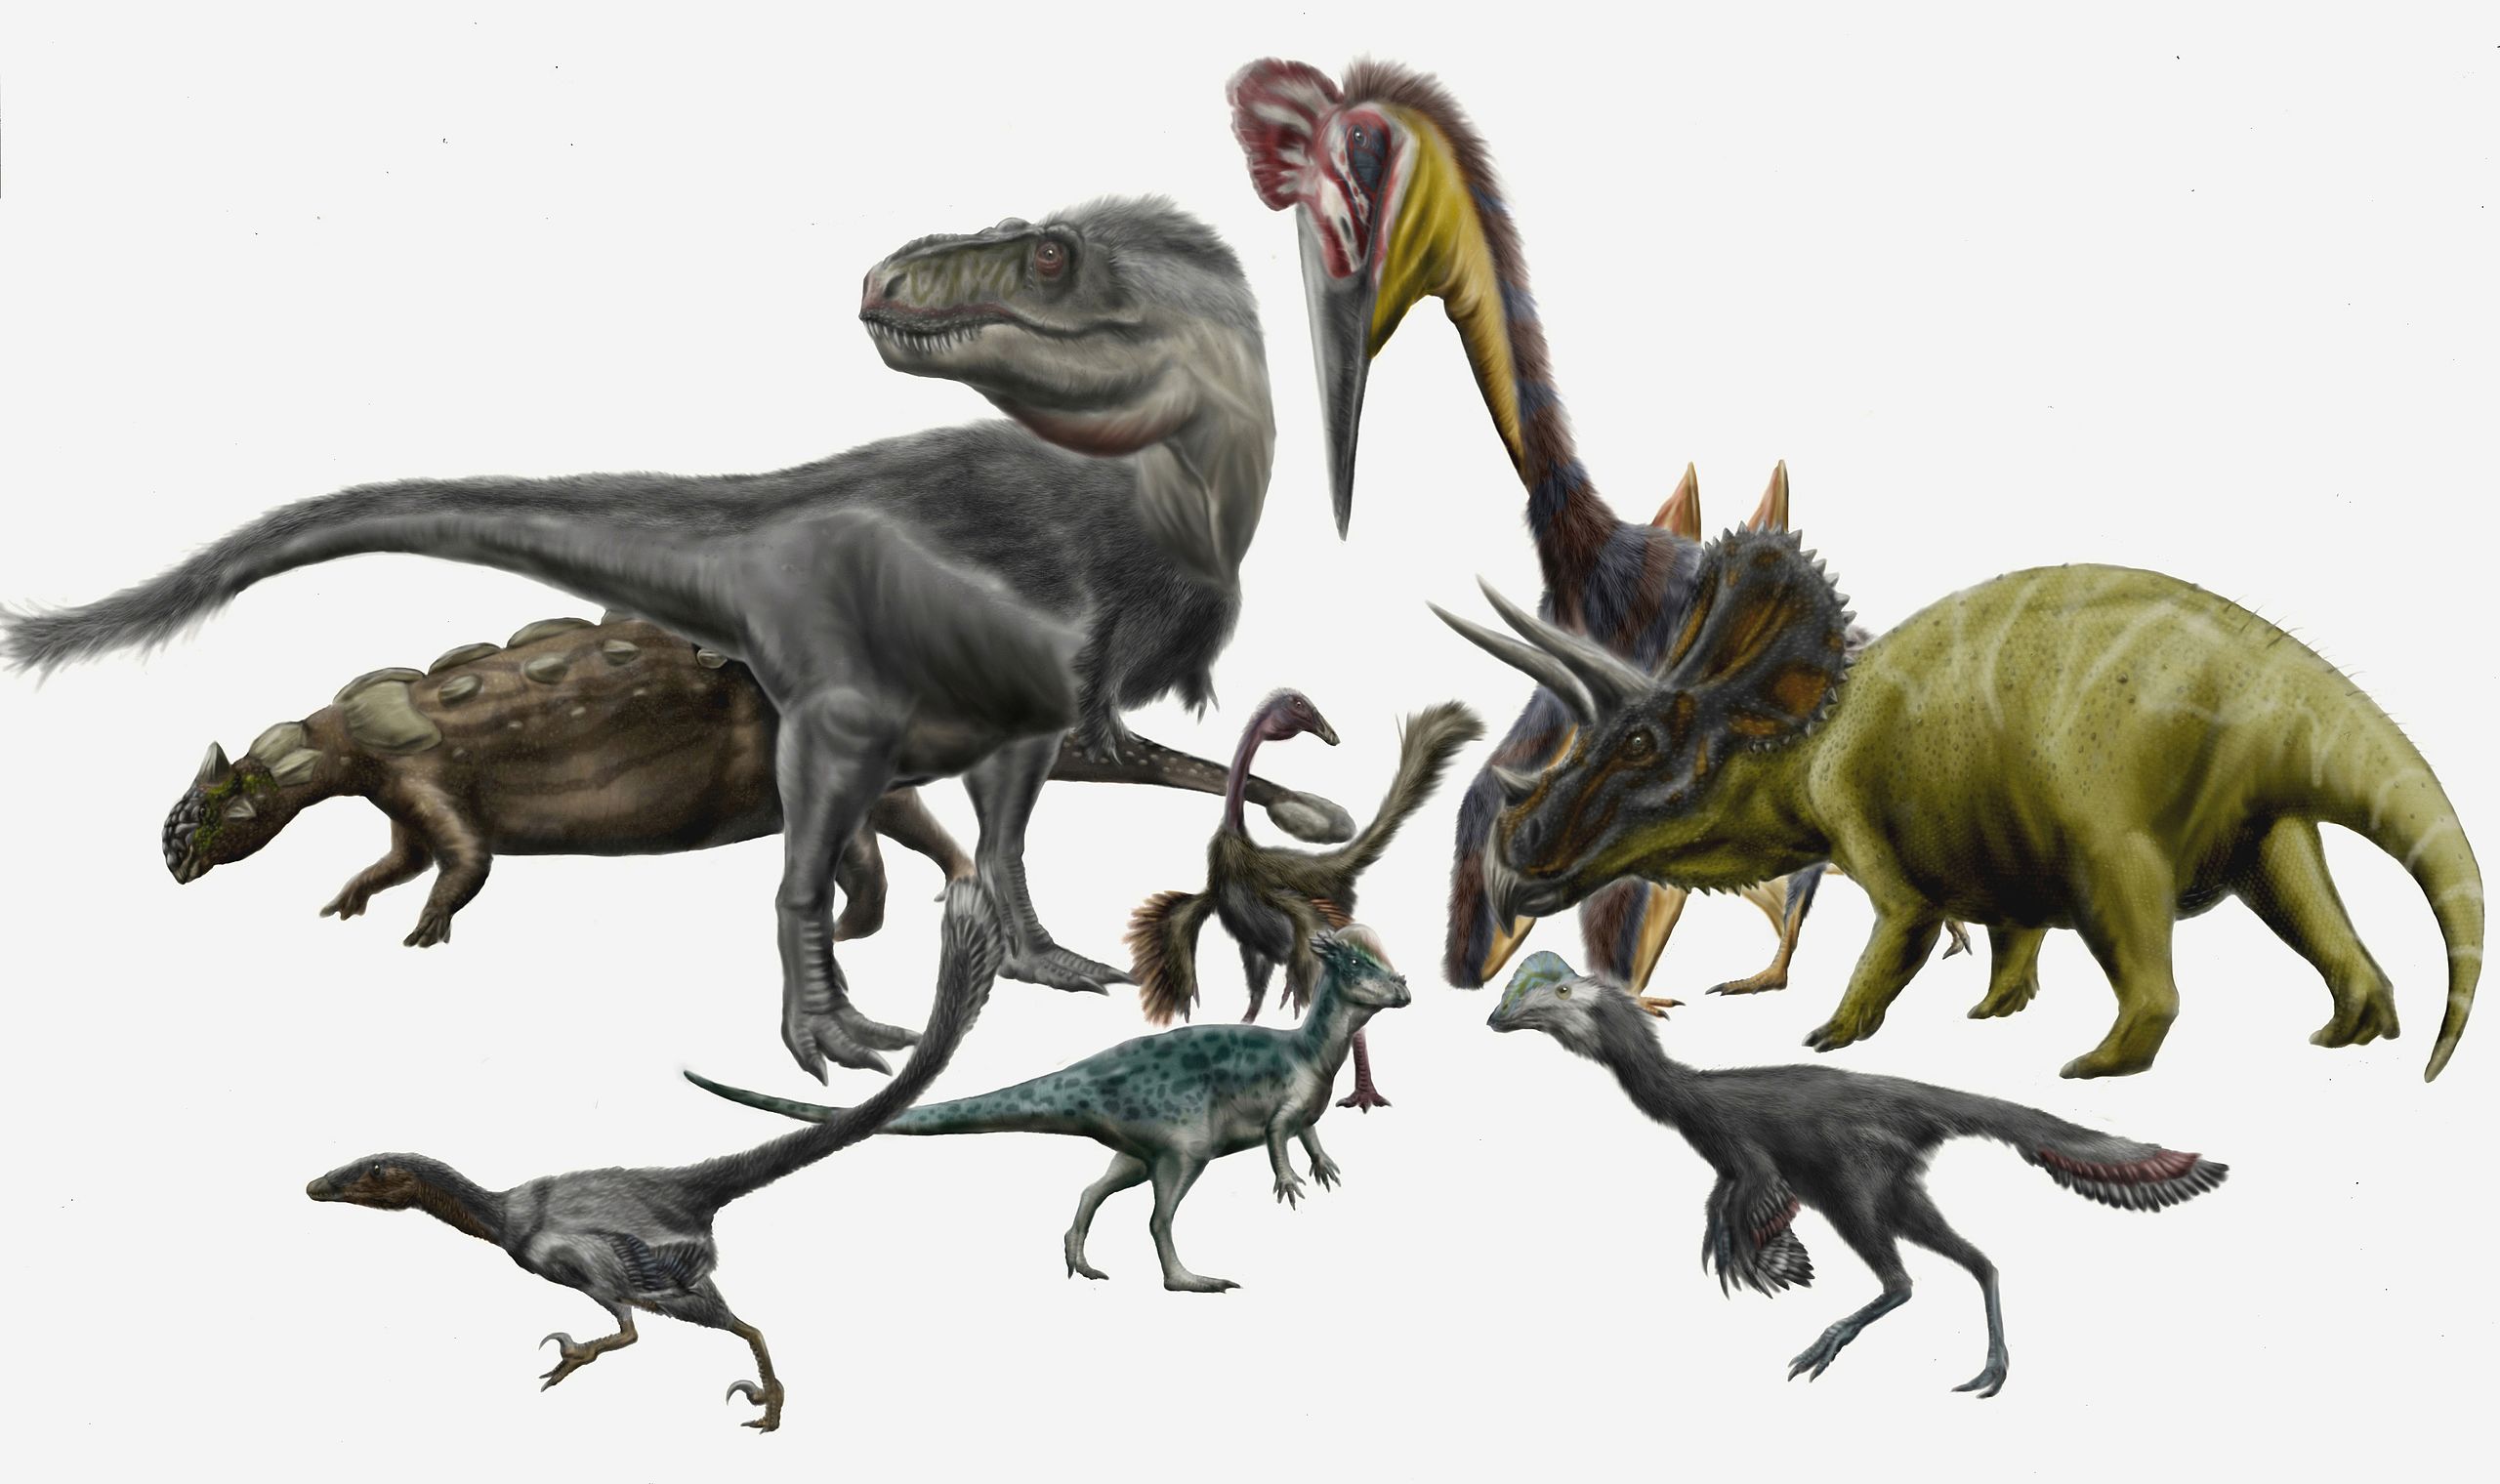 Tyranosauři nebyli zdaleka jedinými dinosauřími obyvateli pozdně křídových severoamerických ekosystémů. Jak se ale ukazuje, paleontologové první poloviny minulého století se velmi mýlili, když druh T. rex považovali za vzácný a řídce se vyskytující. 